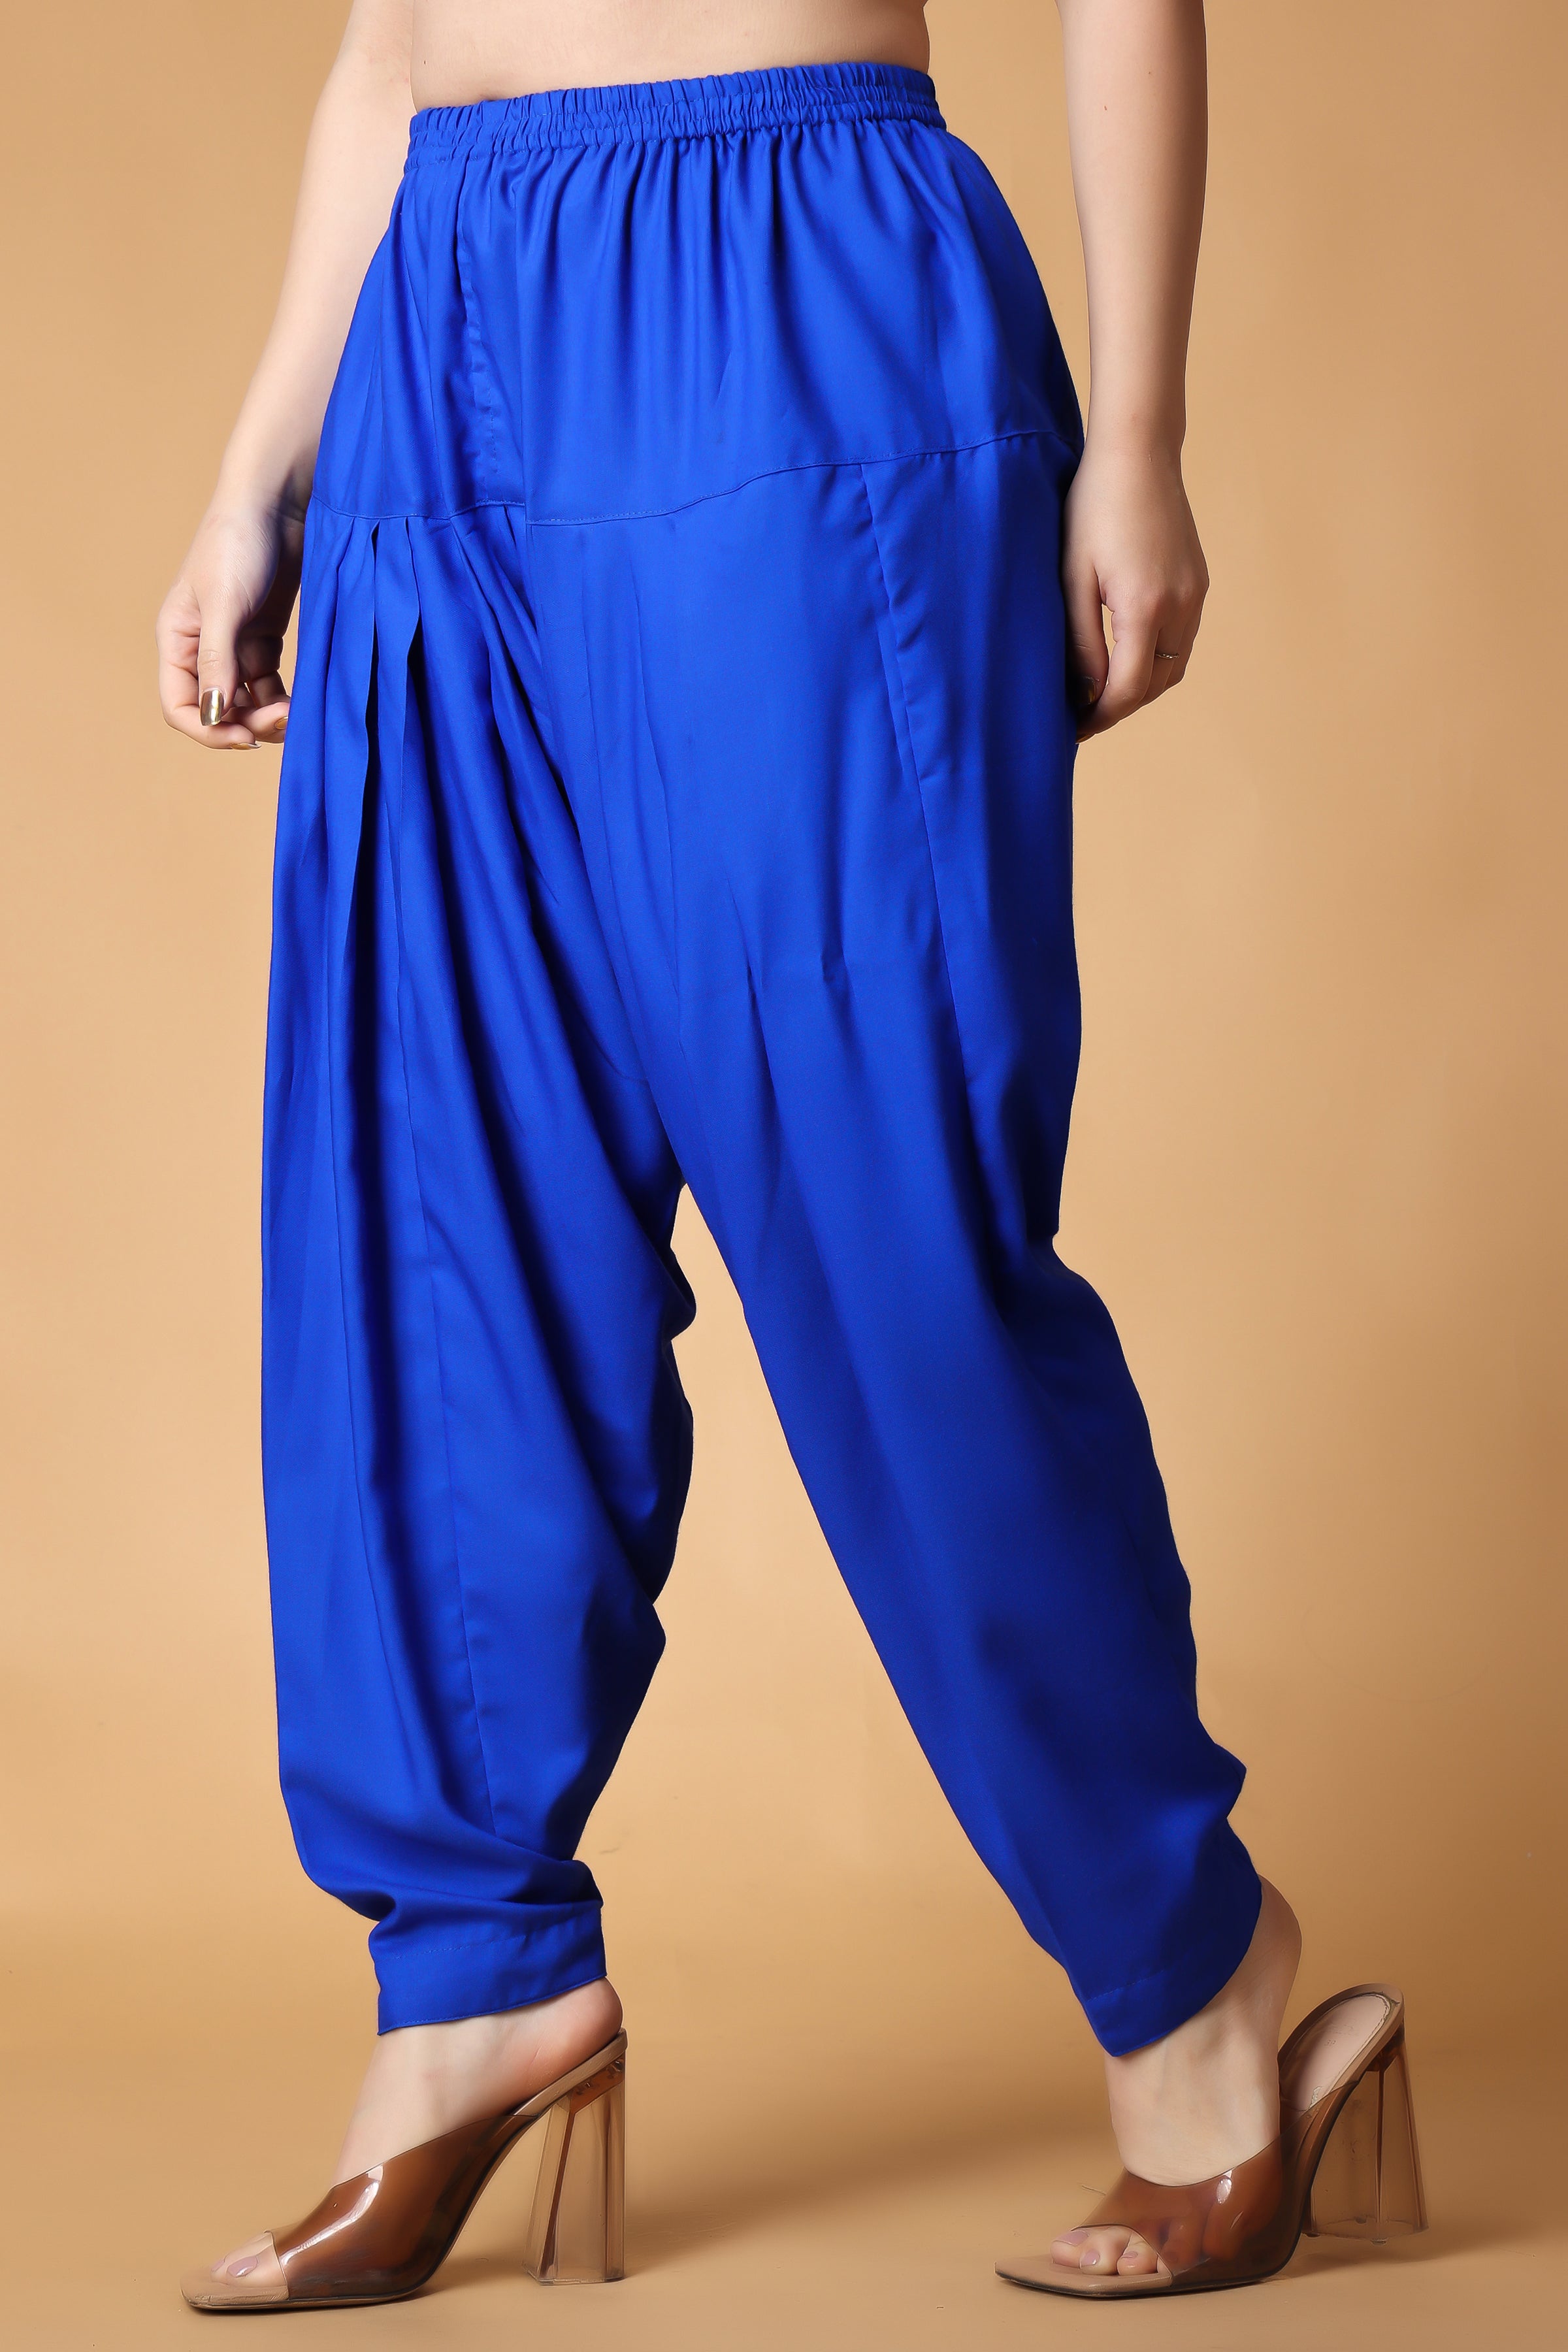 Cotton Women Patiala Salwar Regular Fit Salwar Pants Regular Maroon Free  Size | eBay